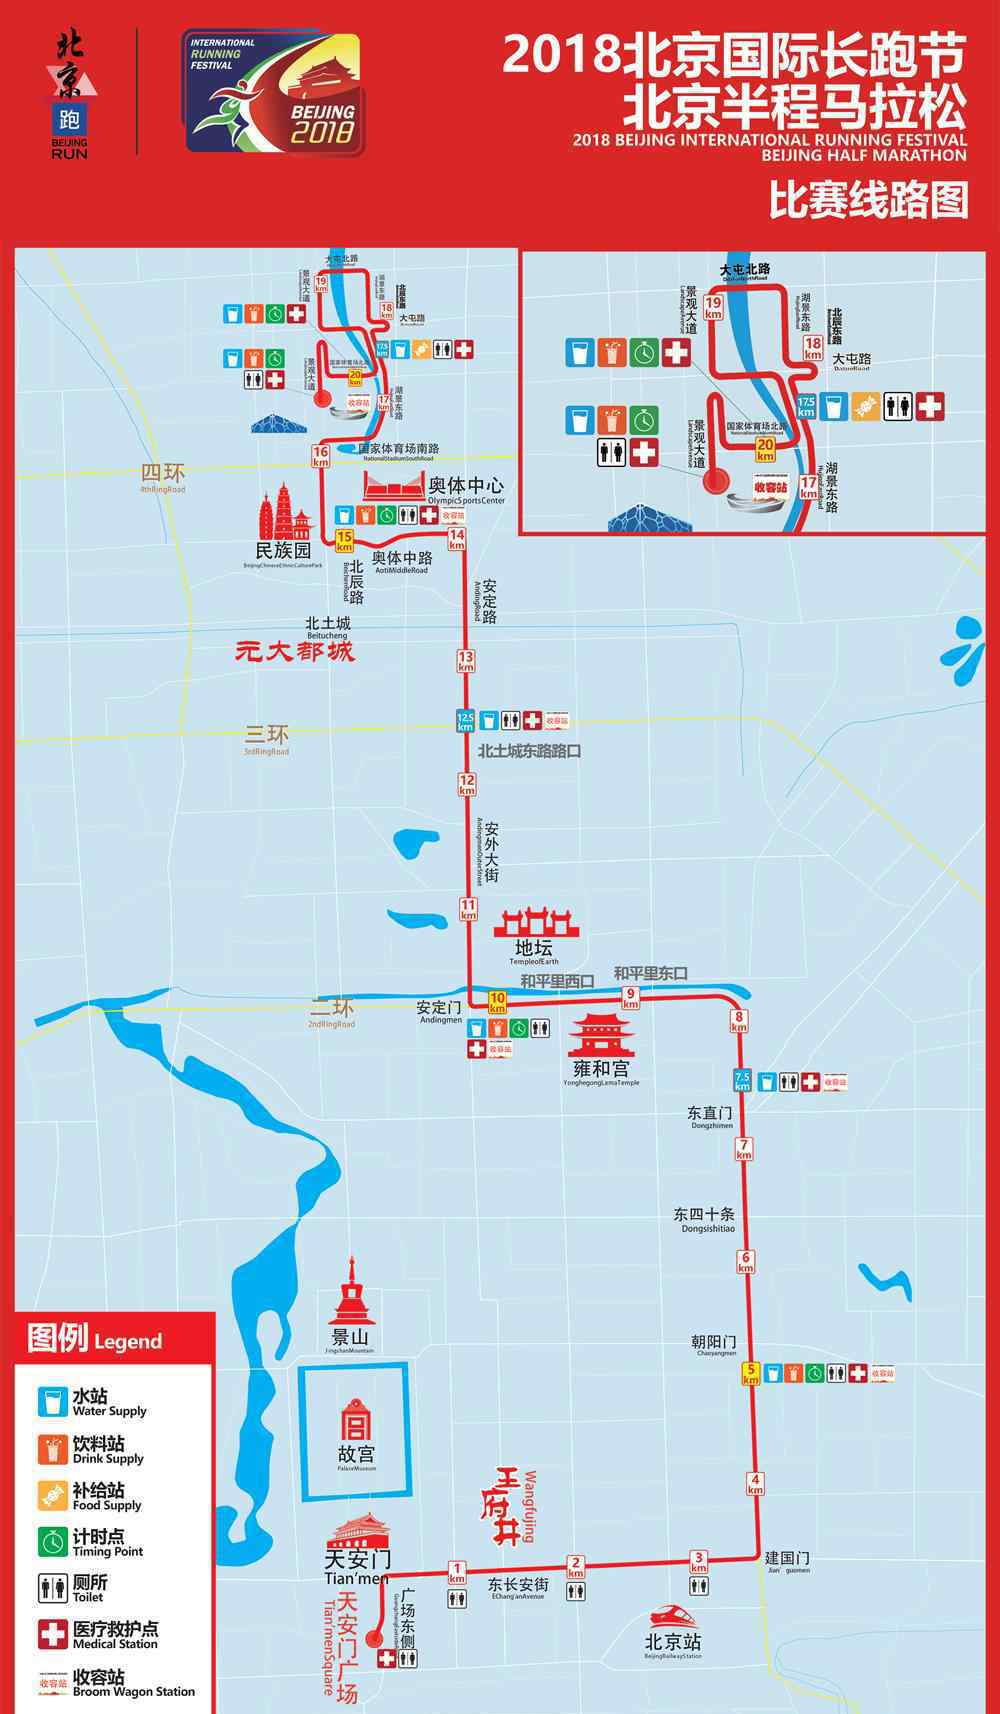 北京国际马拉松赛 2018北京国际长跑节最新消息：北京半程马拉松比赛线路图公布